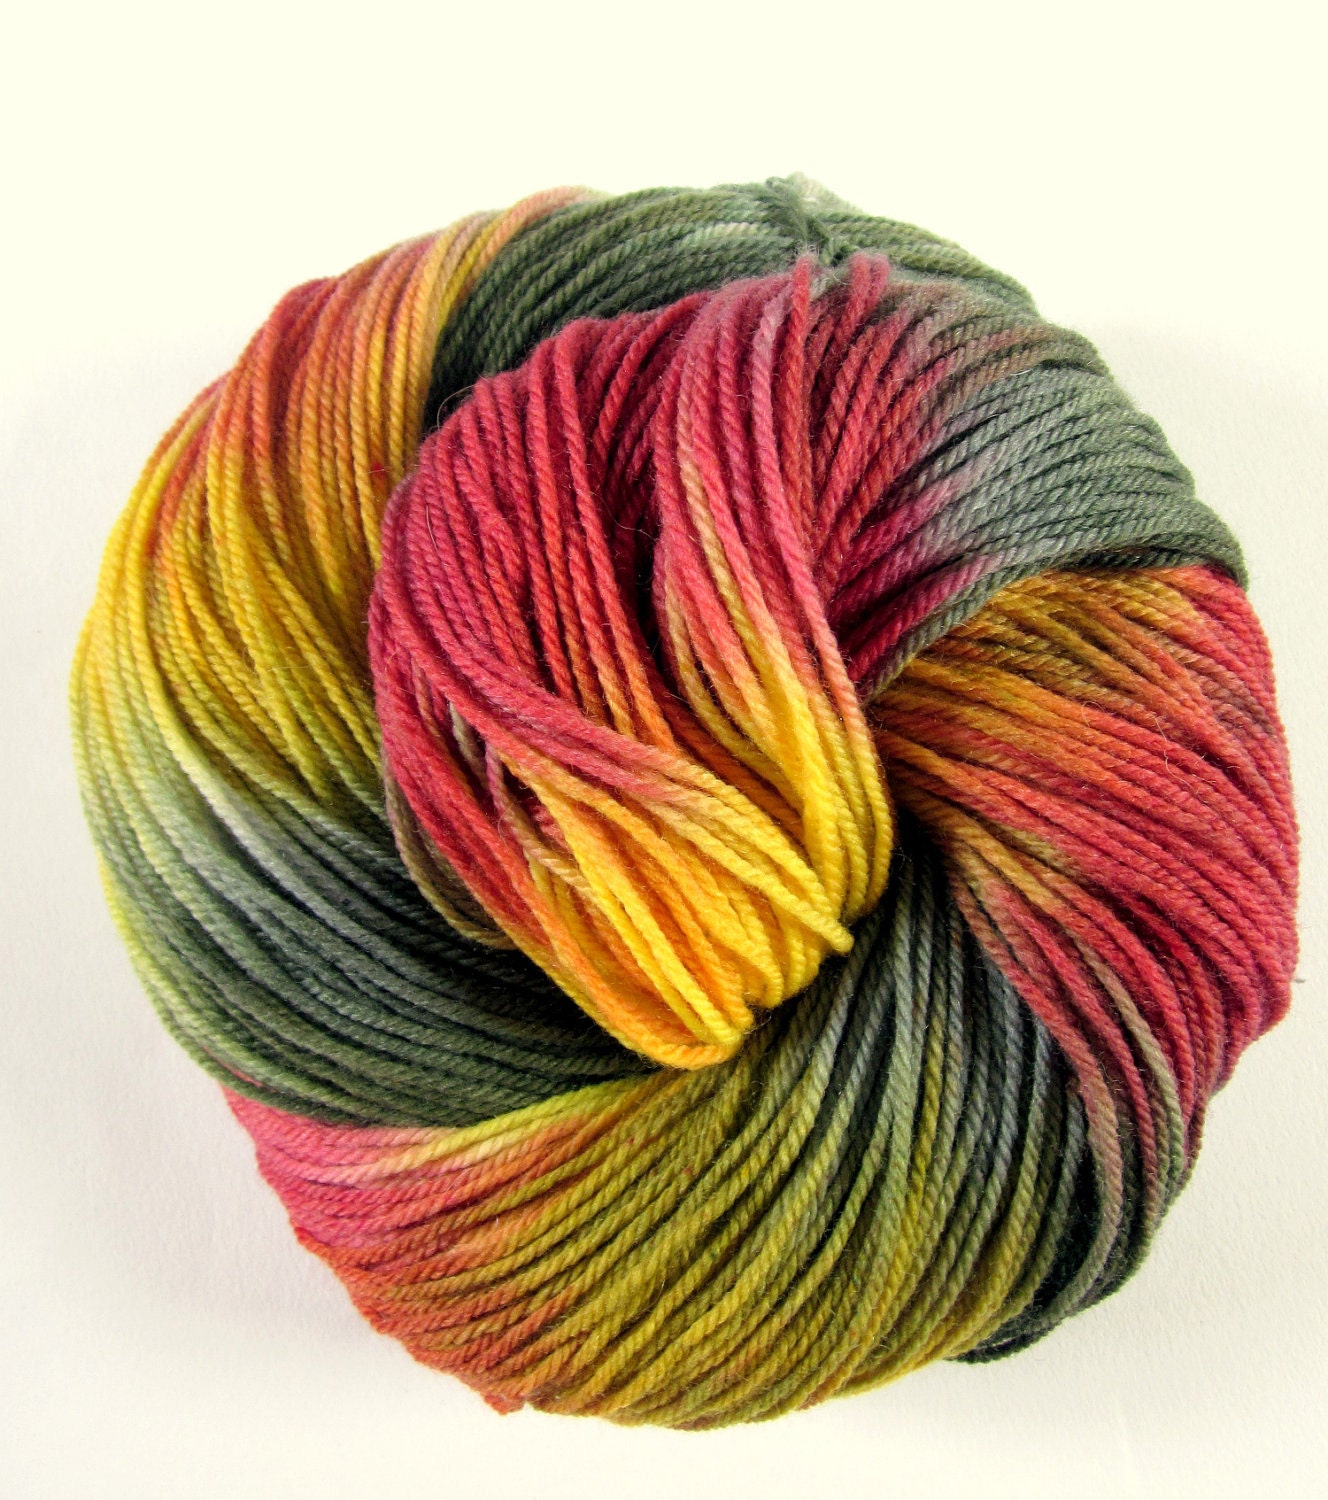 Superwash sock yarn - hand dyed - ultrafine merino, cashmere and nylon - 350 meters - thefibretree